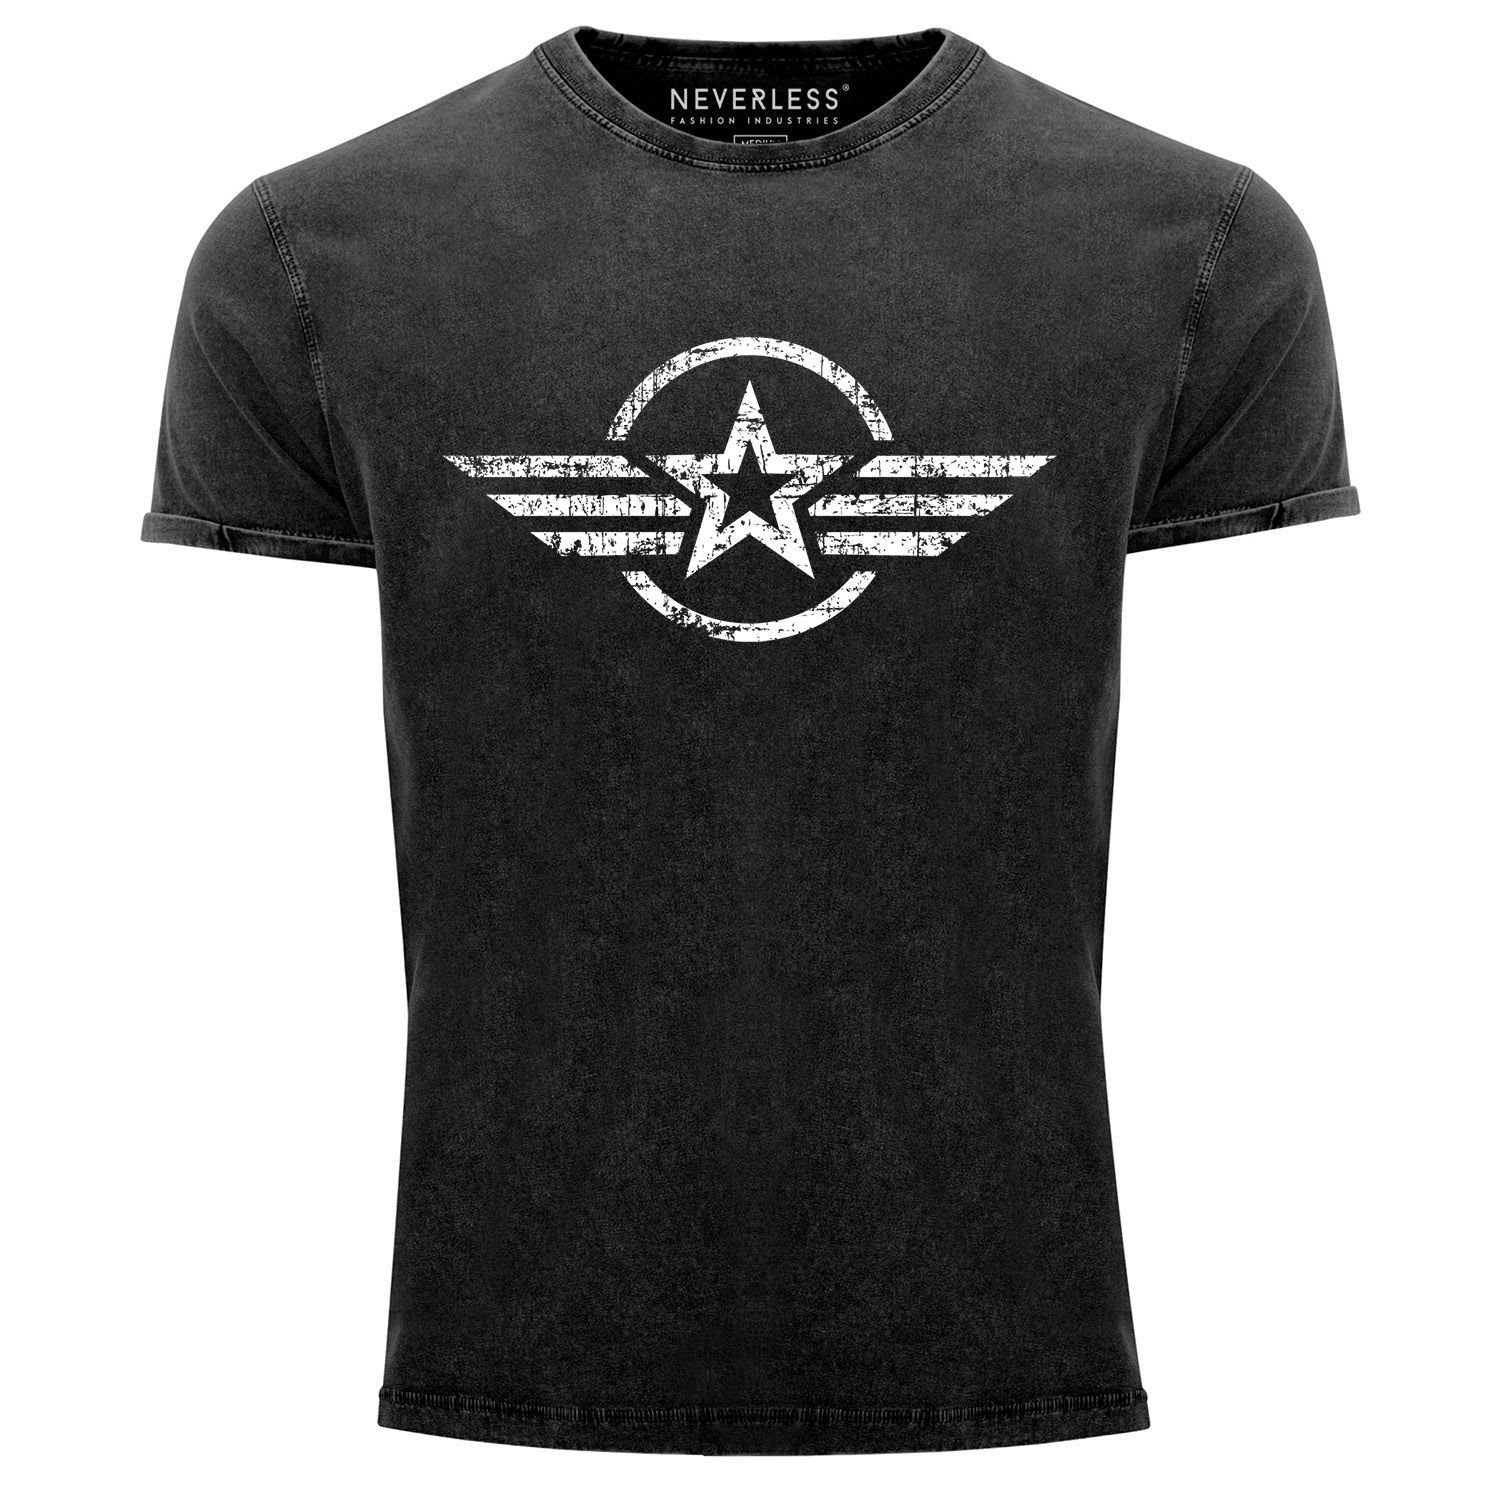 Neverless Print-Shirt Herren Vintage Shirt Airforce Stern Army Military Aufdruck Printshirt T-Shirt Aufdruck Used Look Slim Fit Neverless® mit Print schwarz